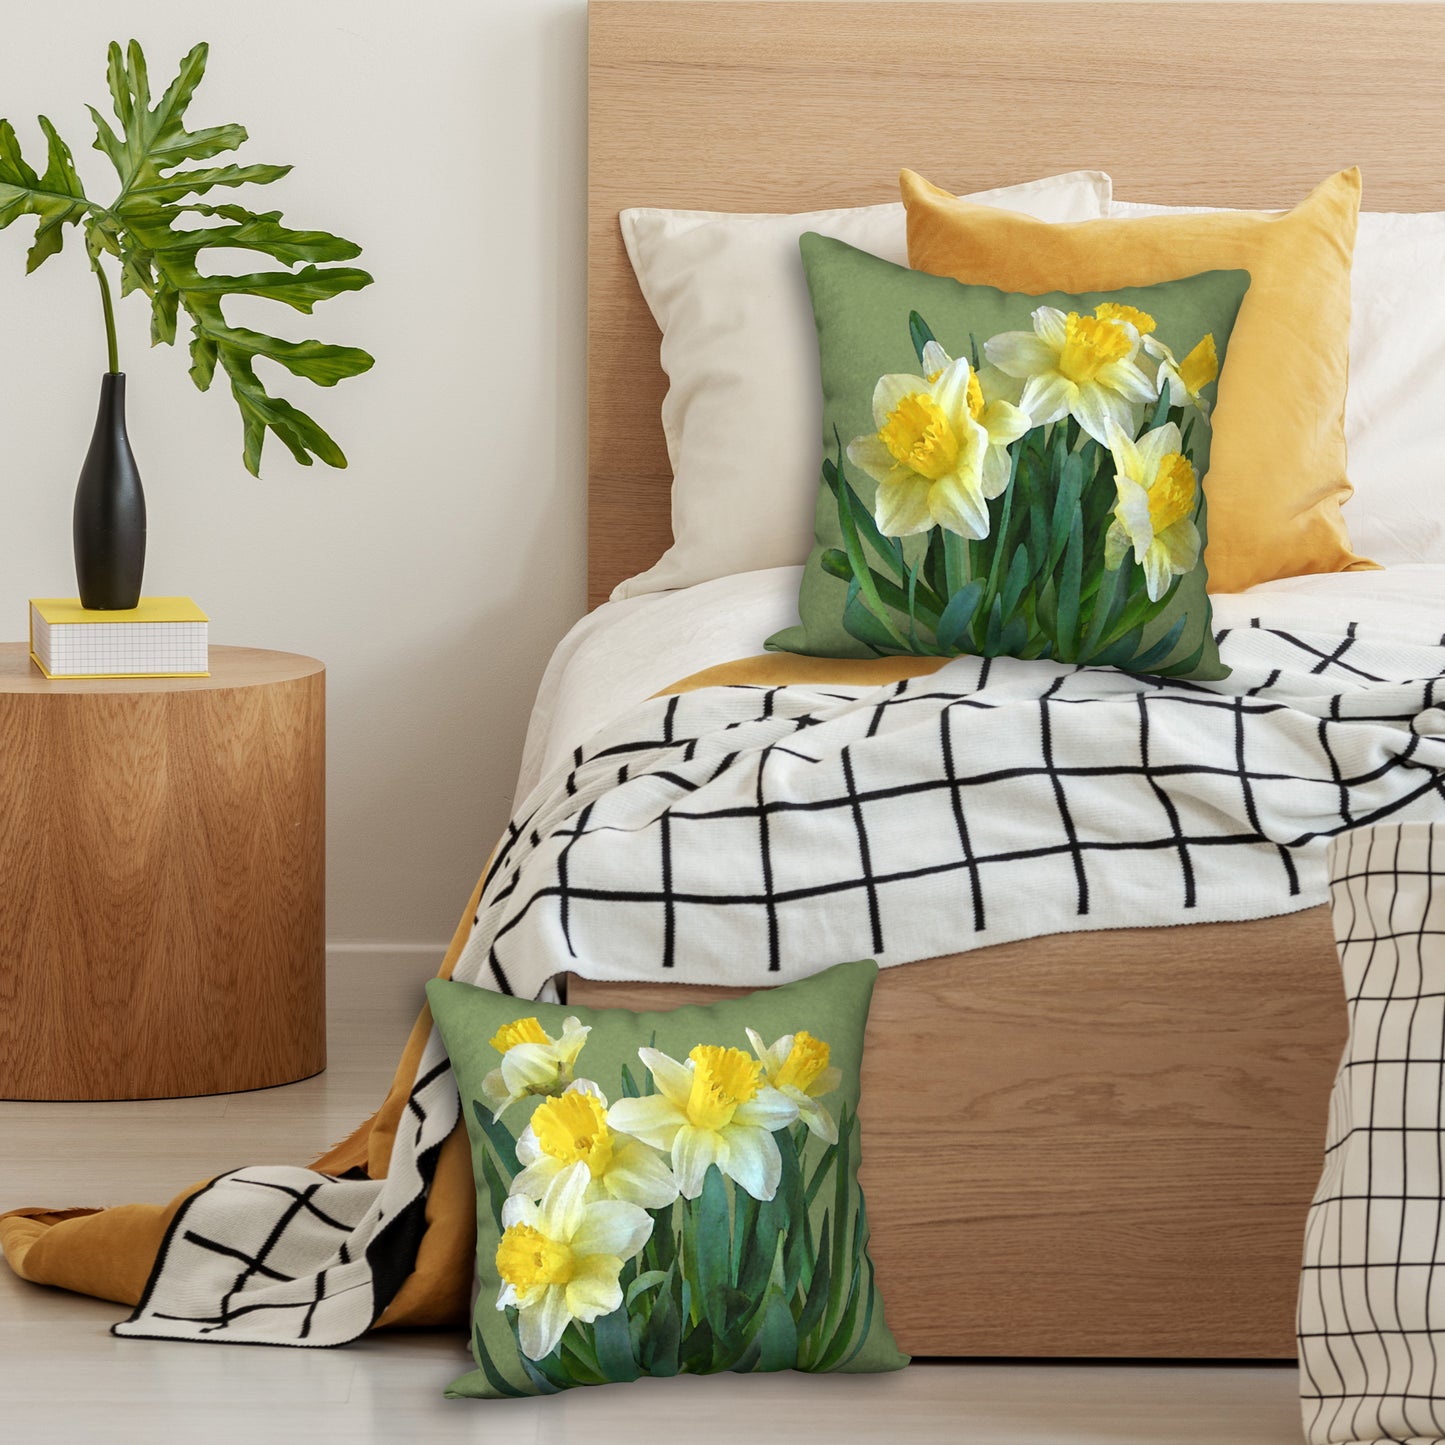 Daffodil Bouquet Designer Pillow, 18"x18"